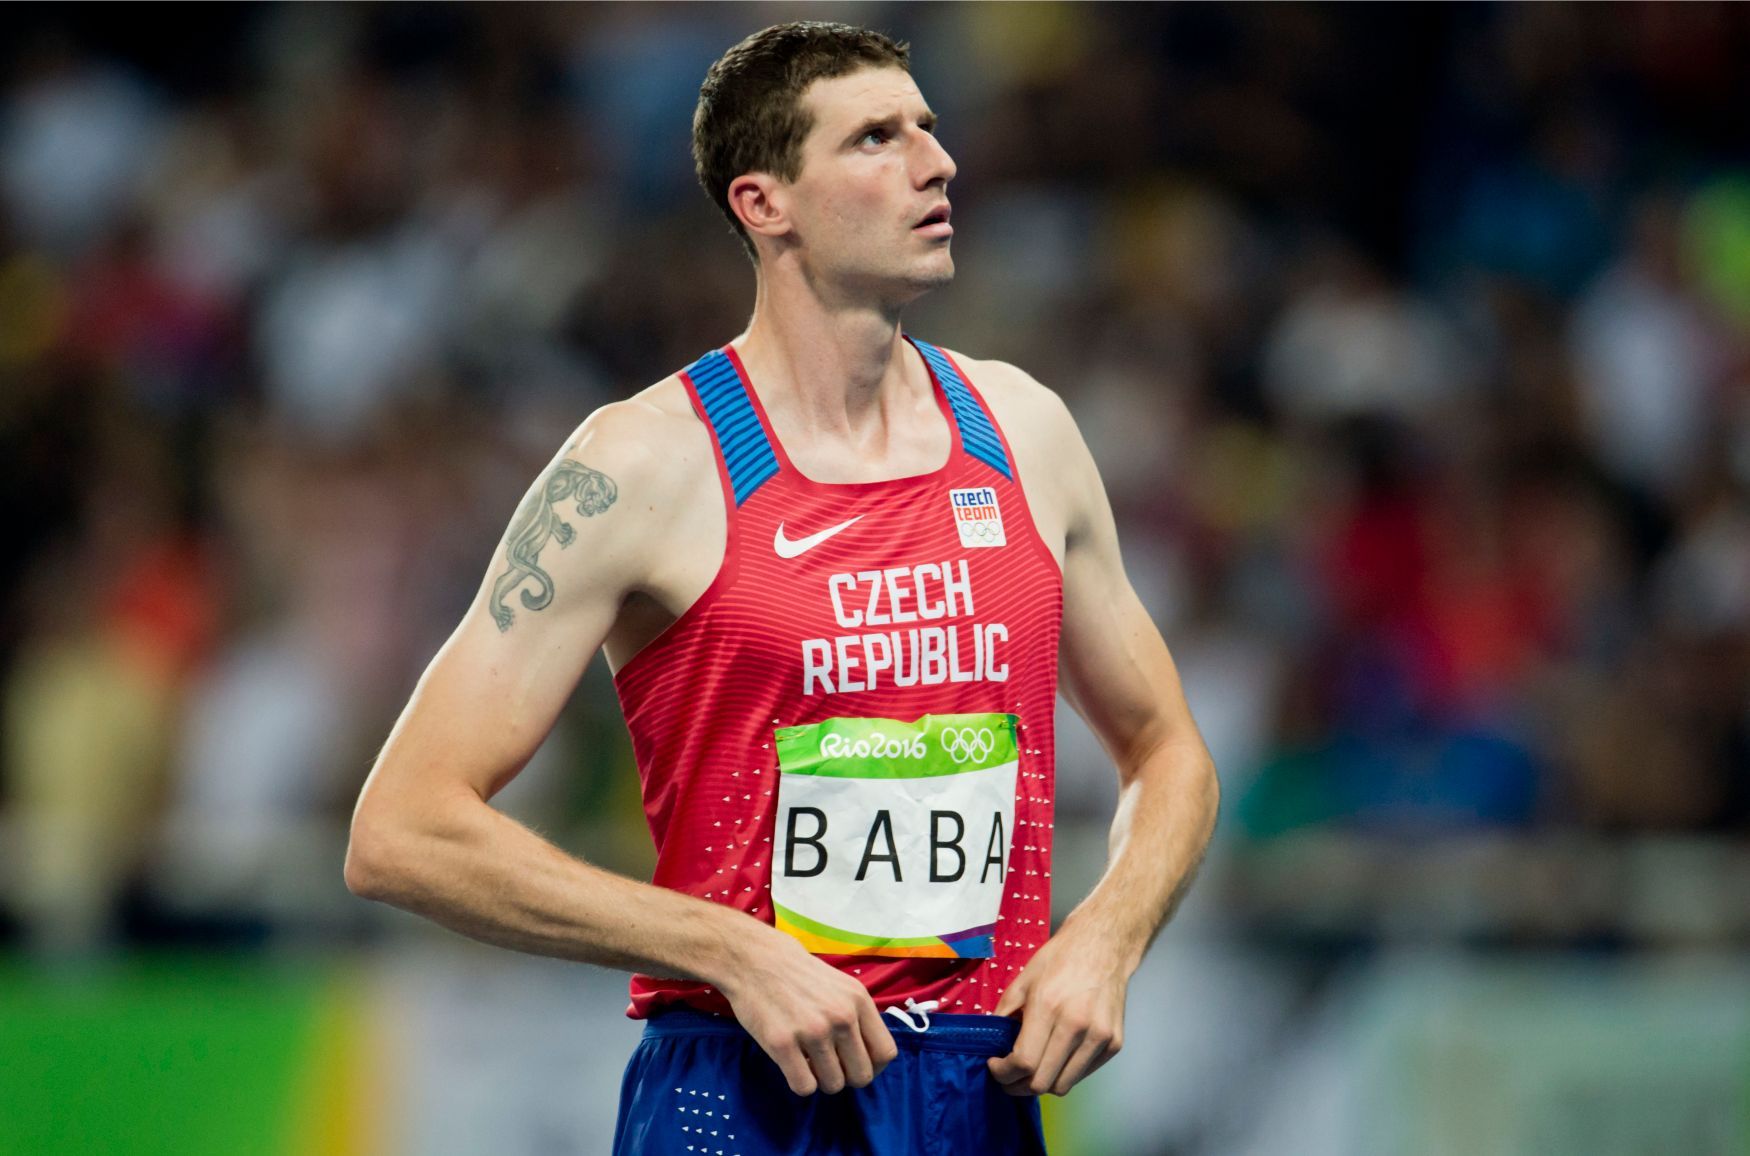 Výškař Jaroslav Bába na olympiádě v Rio de Janeiru 2016